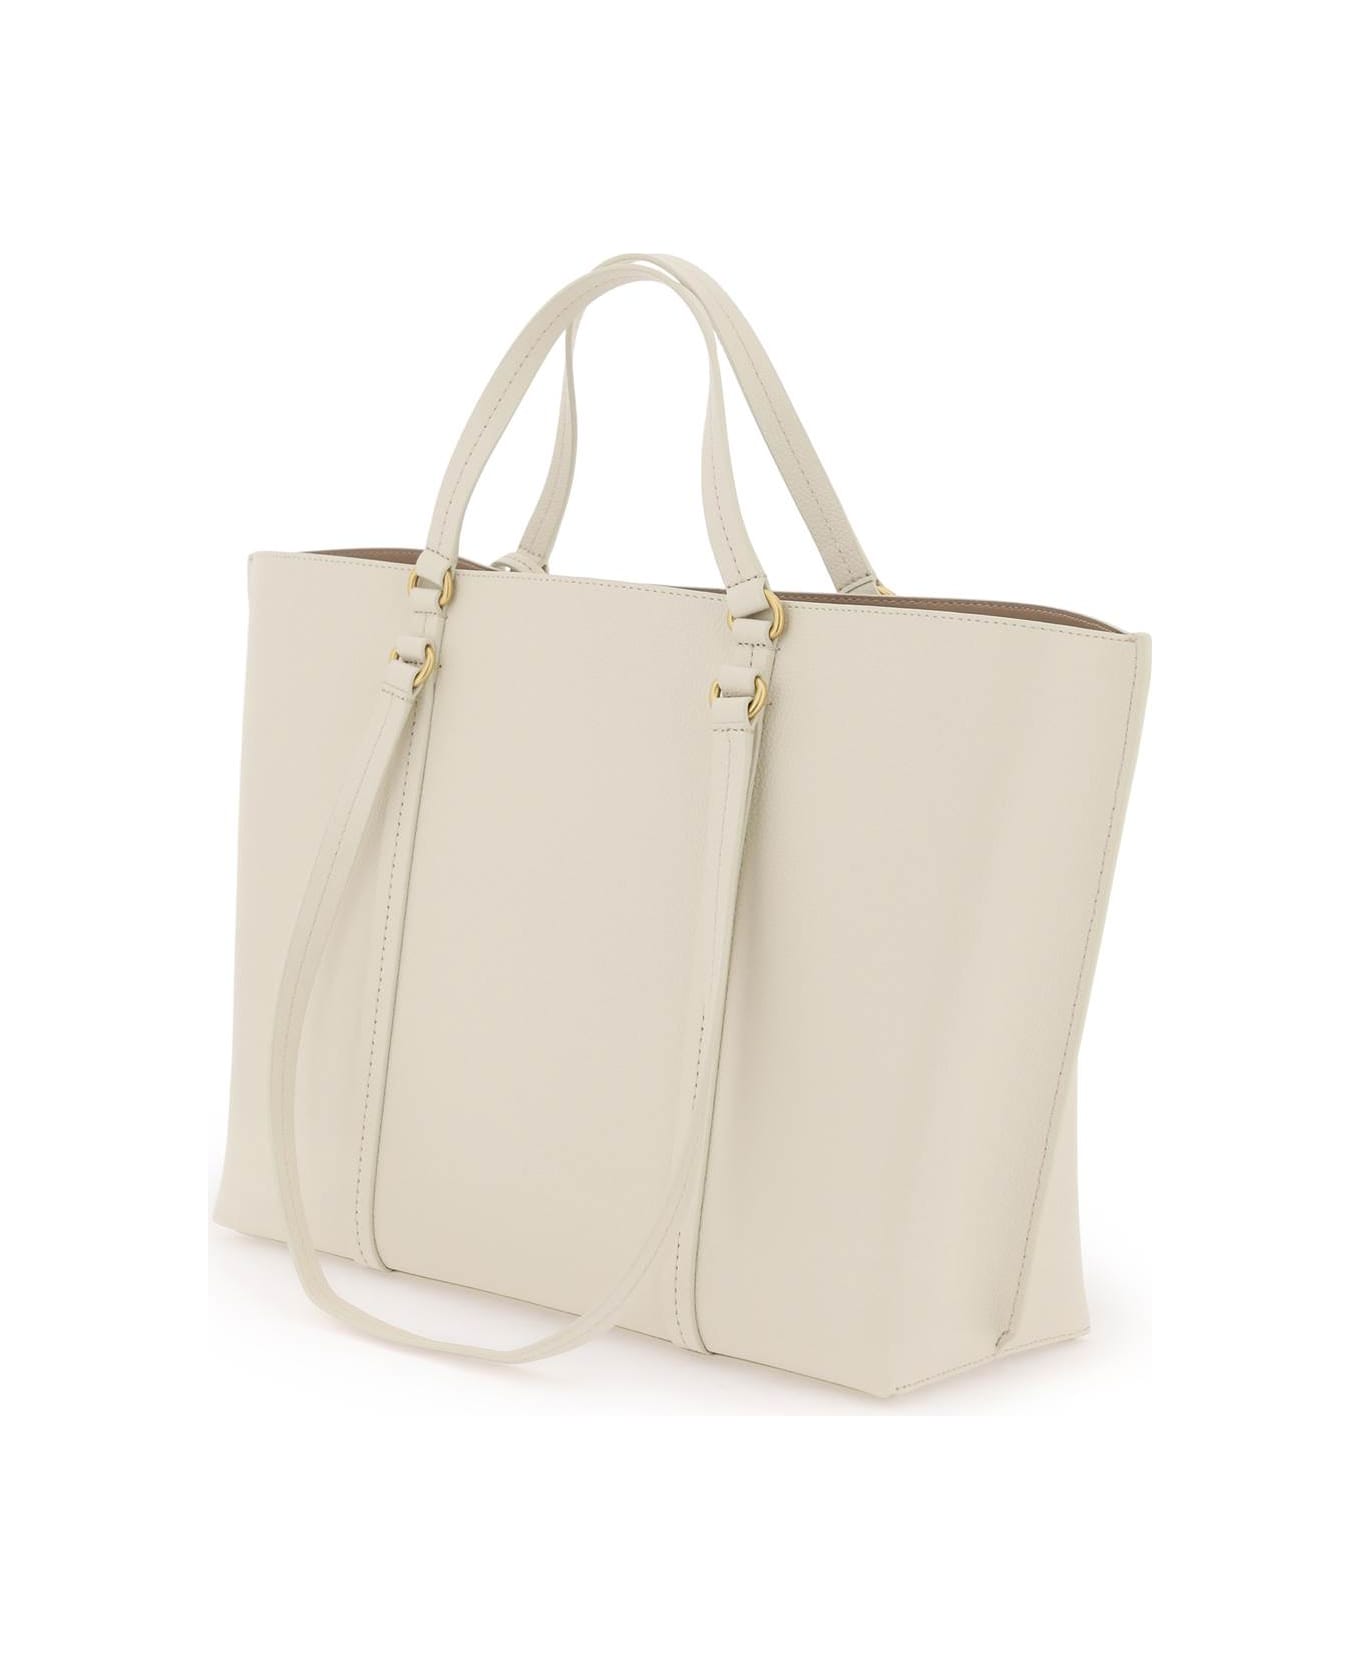 Pinko Shopper Bag - BIANCO SETA ANTIQUE GOLD (White) トートバッグ